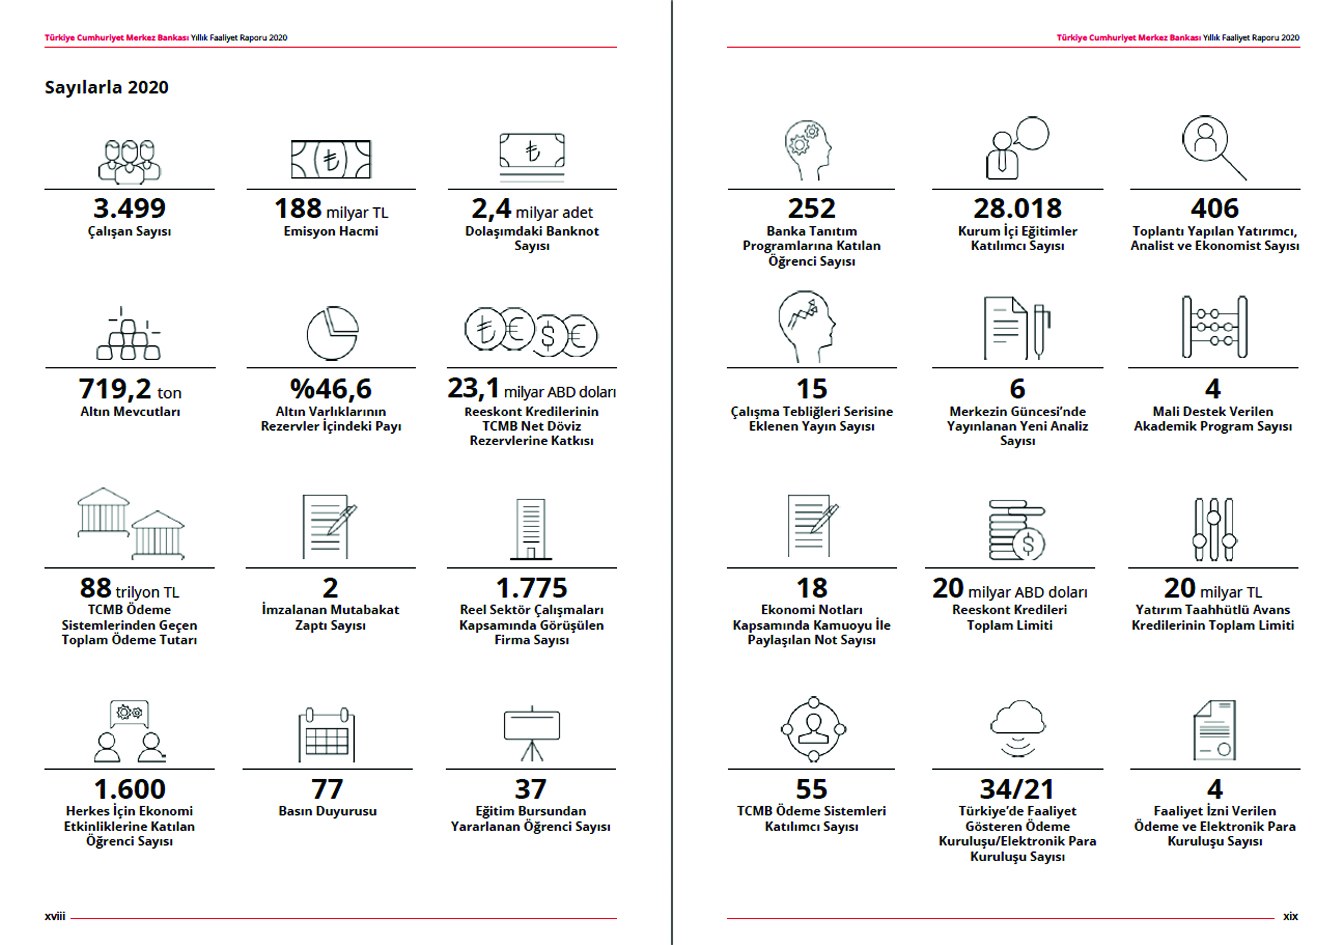 T.C. MERKEZ BANKASI / 2020 Faaliyet Raporu / 2020 Annual Report